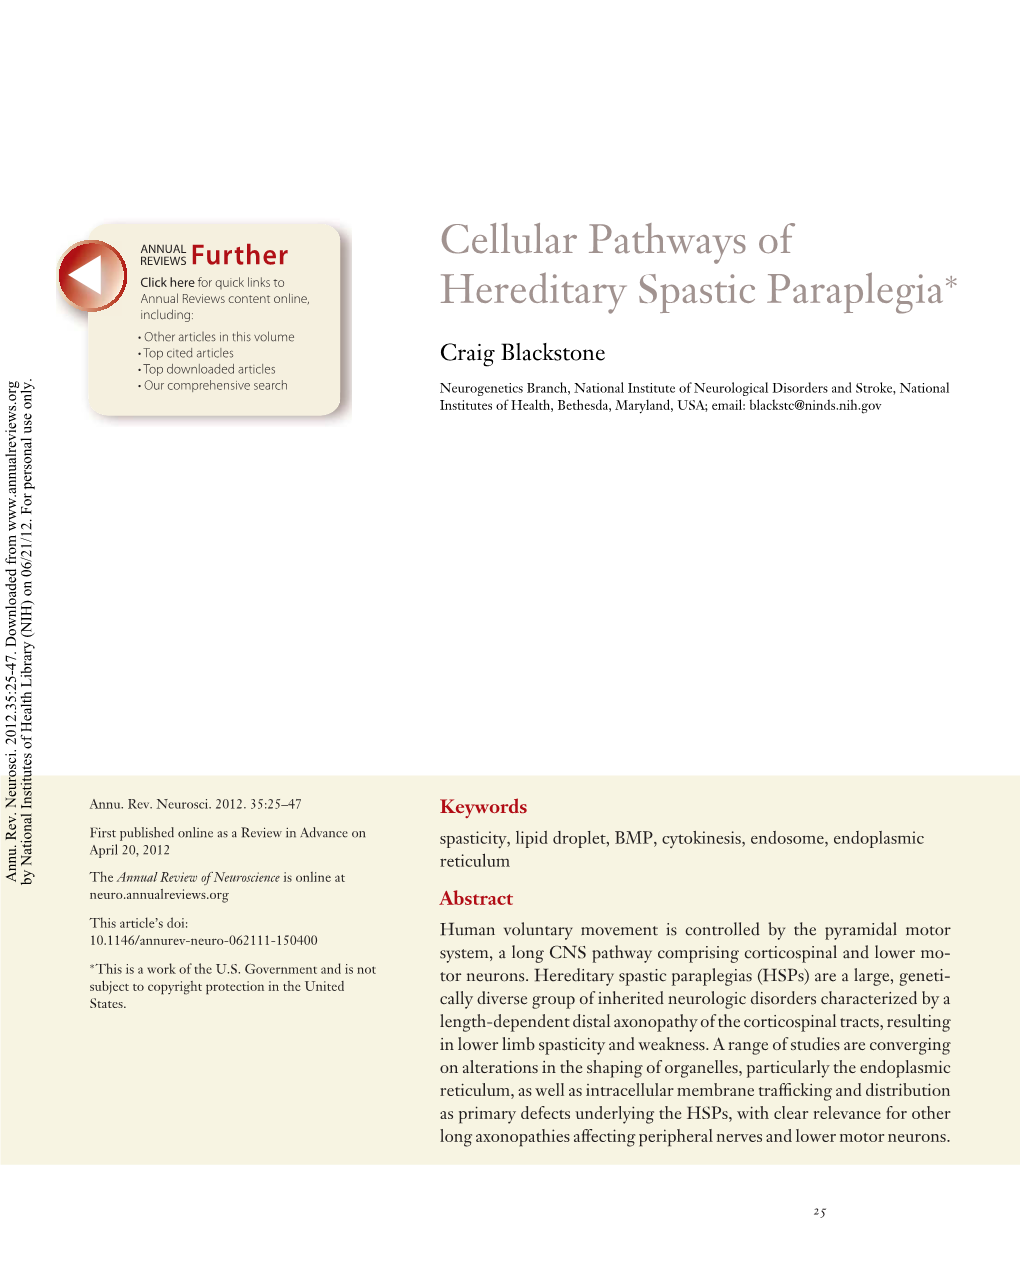 Cellular Pathways of Hereditary Spastic Paraplegia*